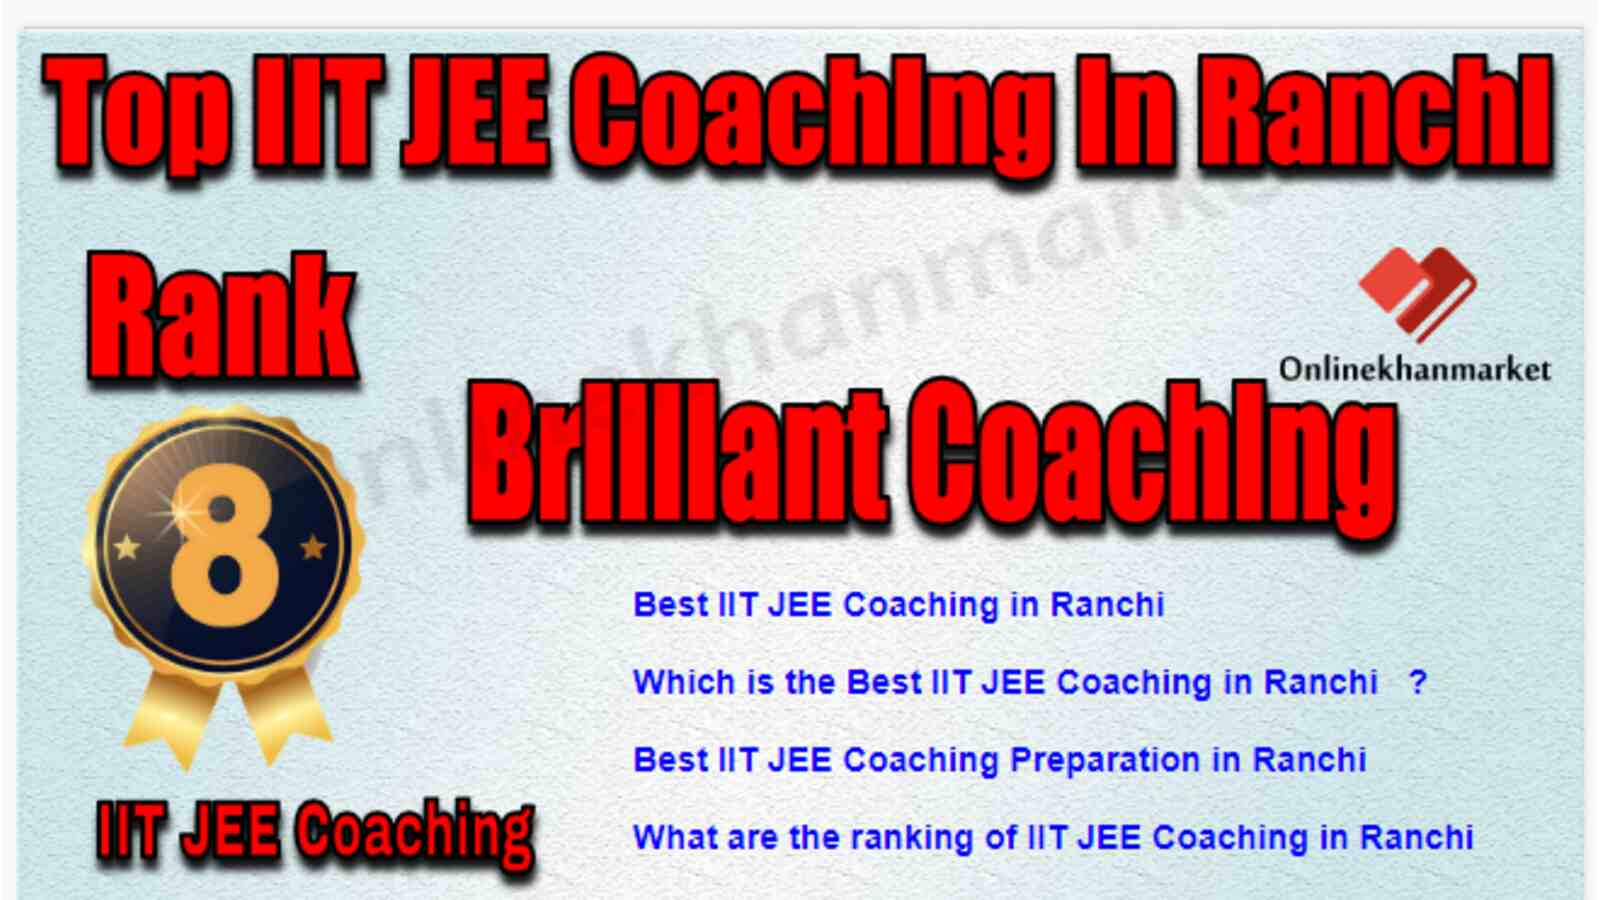 Rank 8 Best IIT JEE Coaching in Ranchi